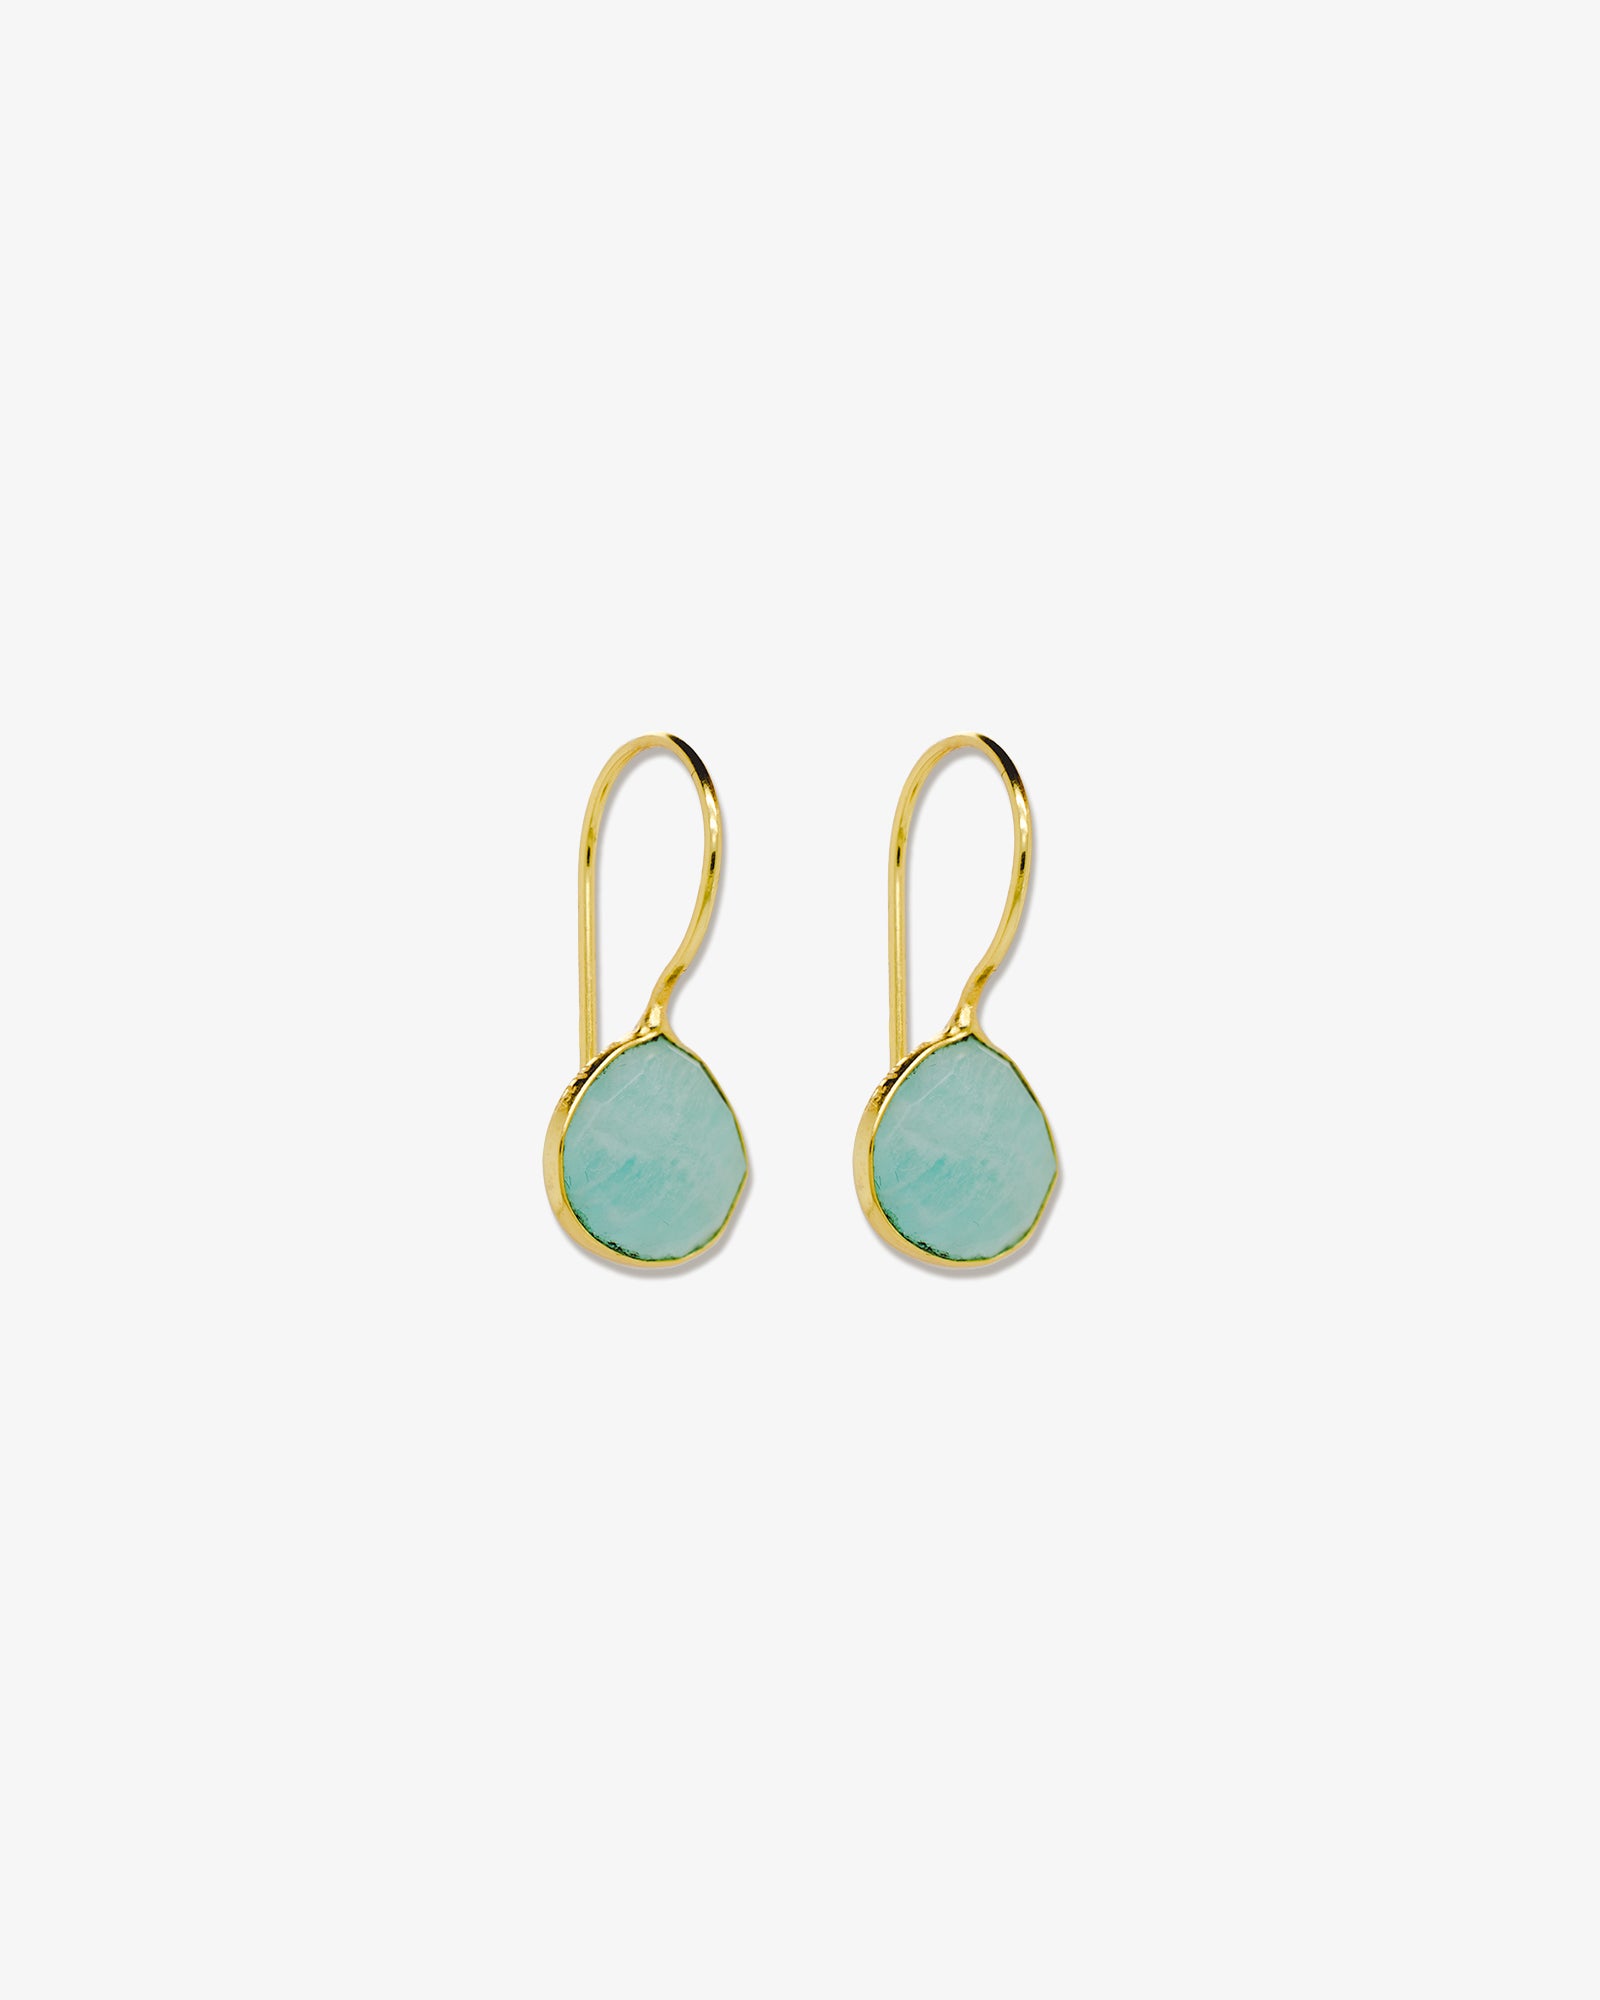 Lana—earrings